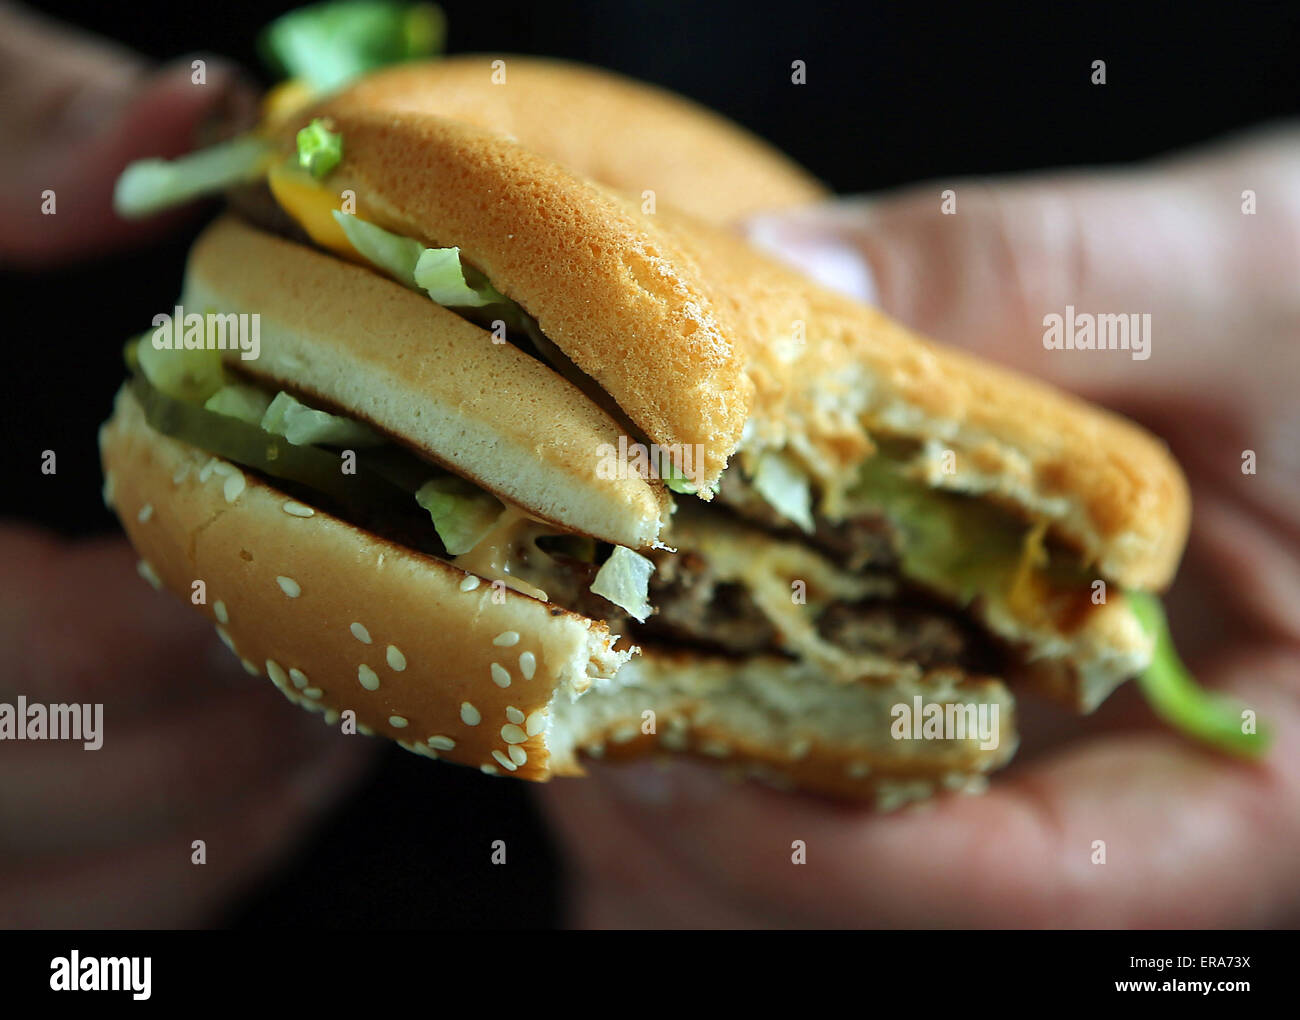 Un uomo mangia un Big Mac burger in corrispondenza di un ramo di un ristorante fast food in franchising McDonalds a Colonia, Germania, 25 maggio 2015. Foto: Oliver Berg/dpa Foto Stock